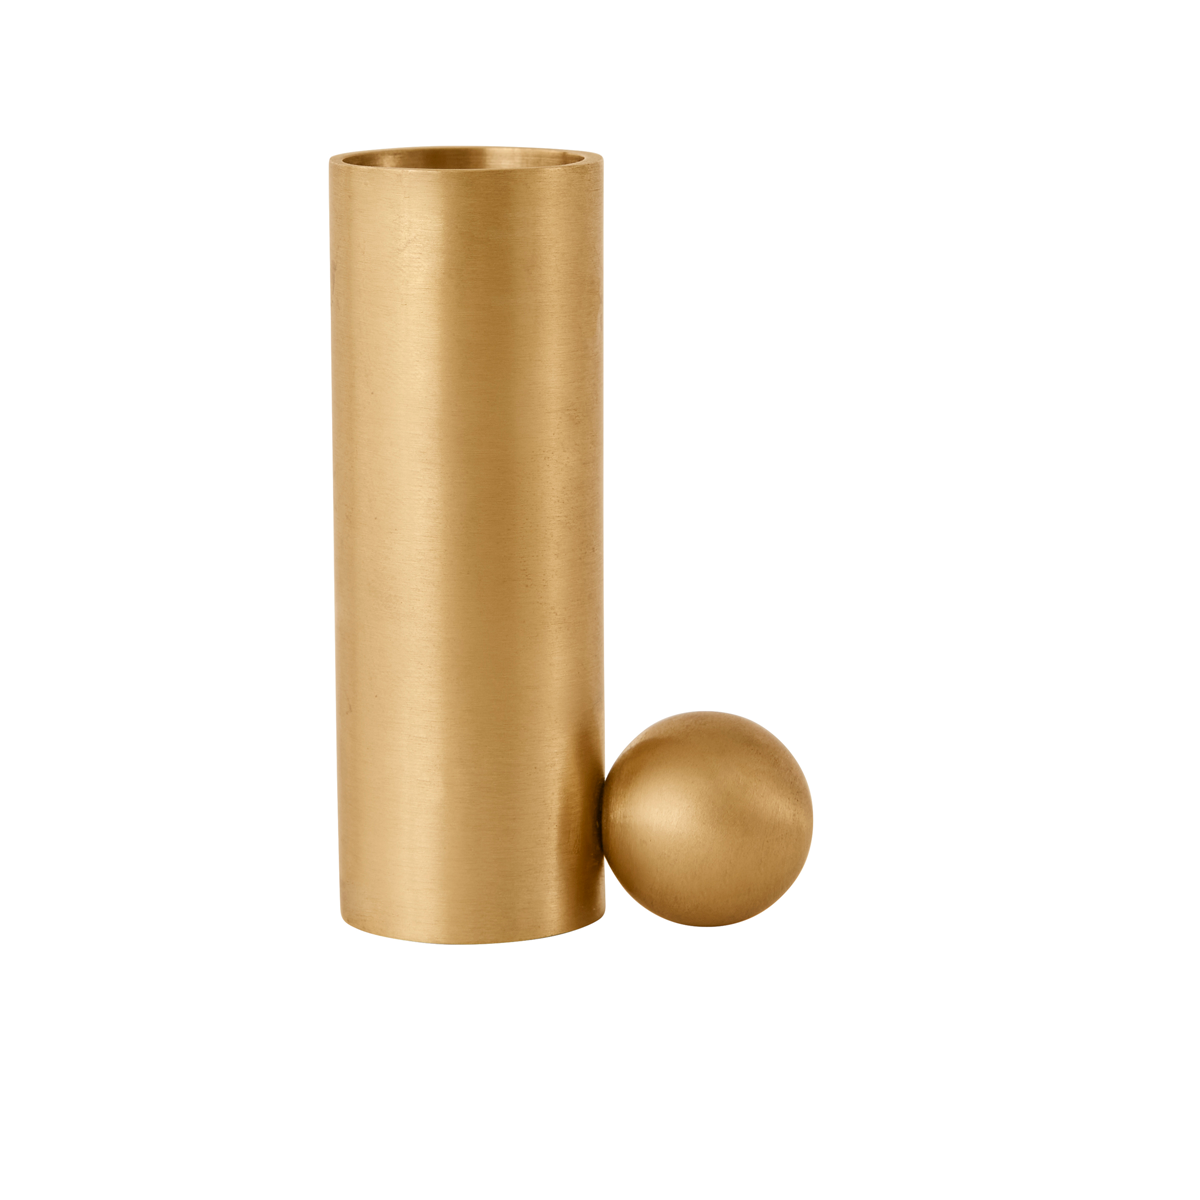 Palloa Solid Brass Candleholder High - Brushed Brass